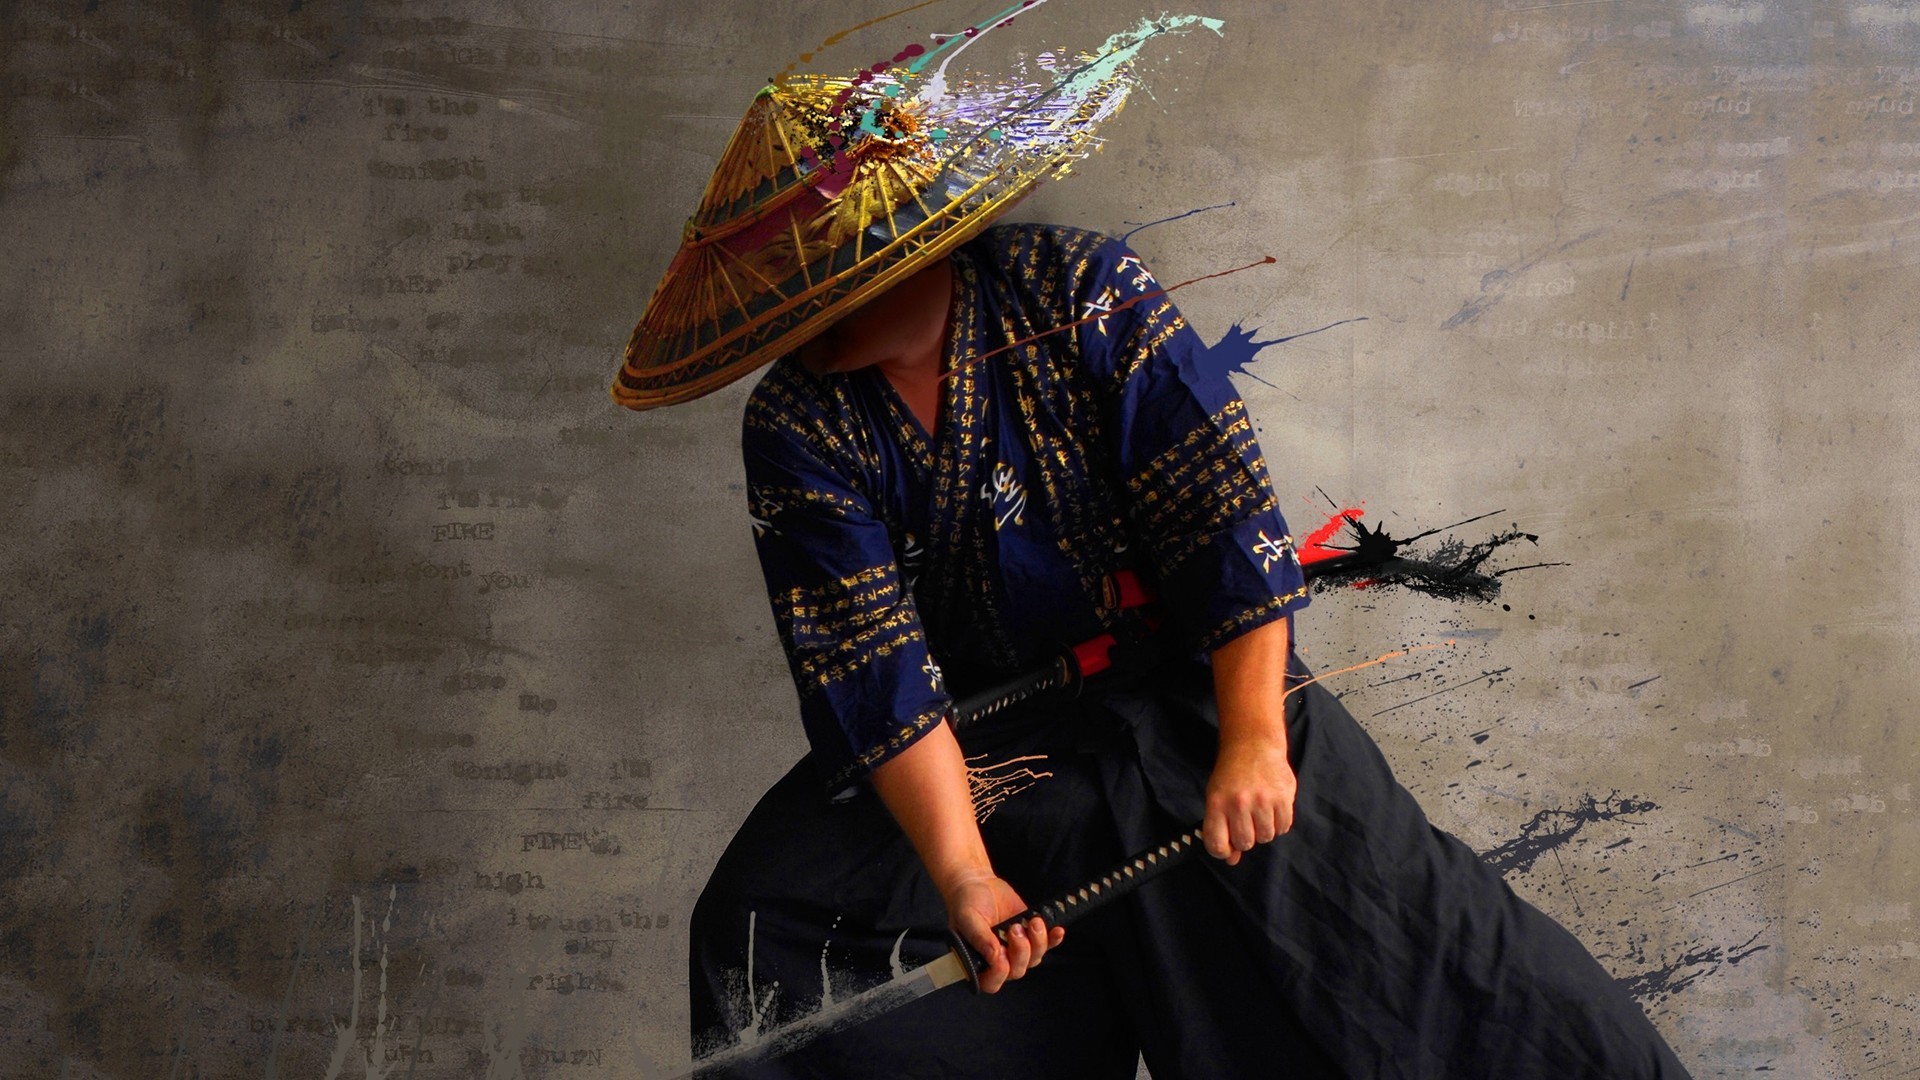 Samurai nghệ thuật: Hãy khám phá vẻ đẹp tuyệt vời của Samurai trong nghệ thuật. Những chiến binh Samurai với kiếm và yên ngựa tạo ra một thế giới cổ đại đầy màu sắc với các kỹ năng tinh tế và phong cách độc đáo. Khám phá những hình ảnh đẹp mắt và những chi tiết tinh tế nhất trong nghệ thuật Samurai.